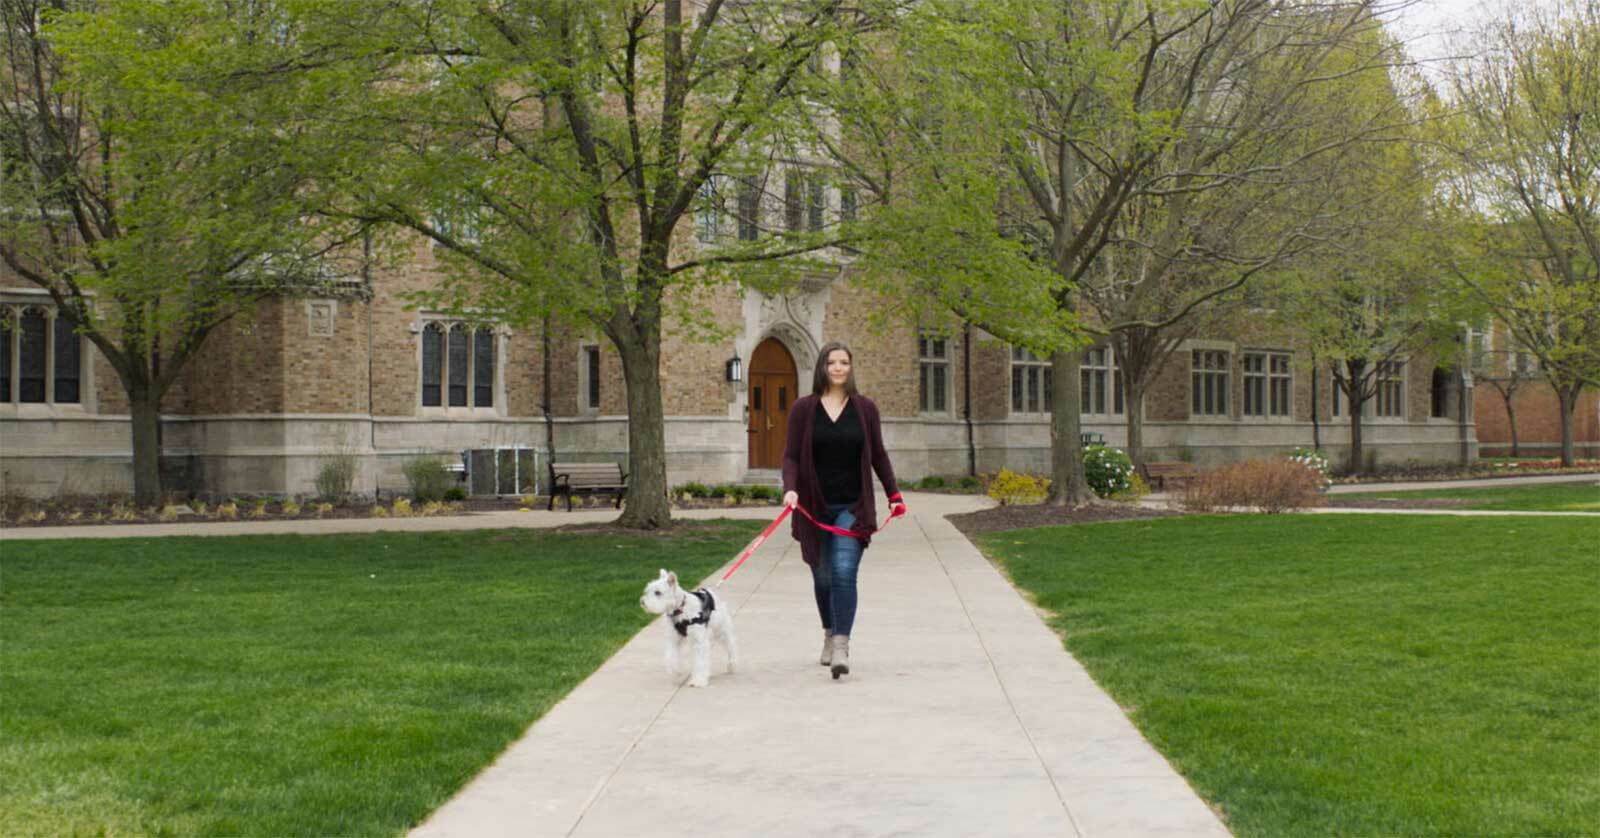 A woman walking a dog on a sidewalk.